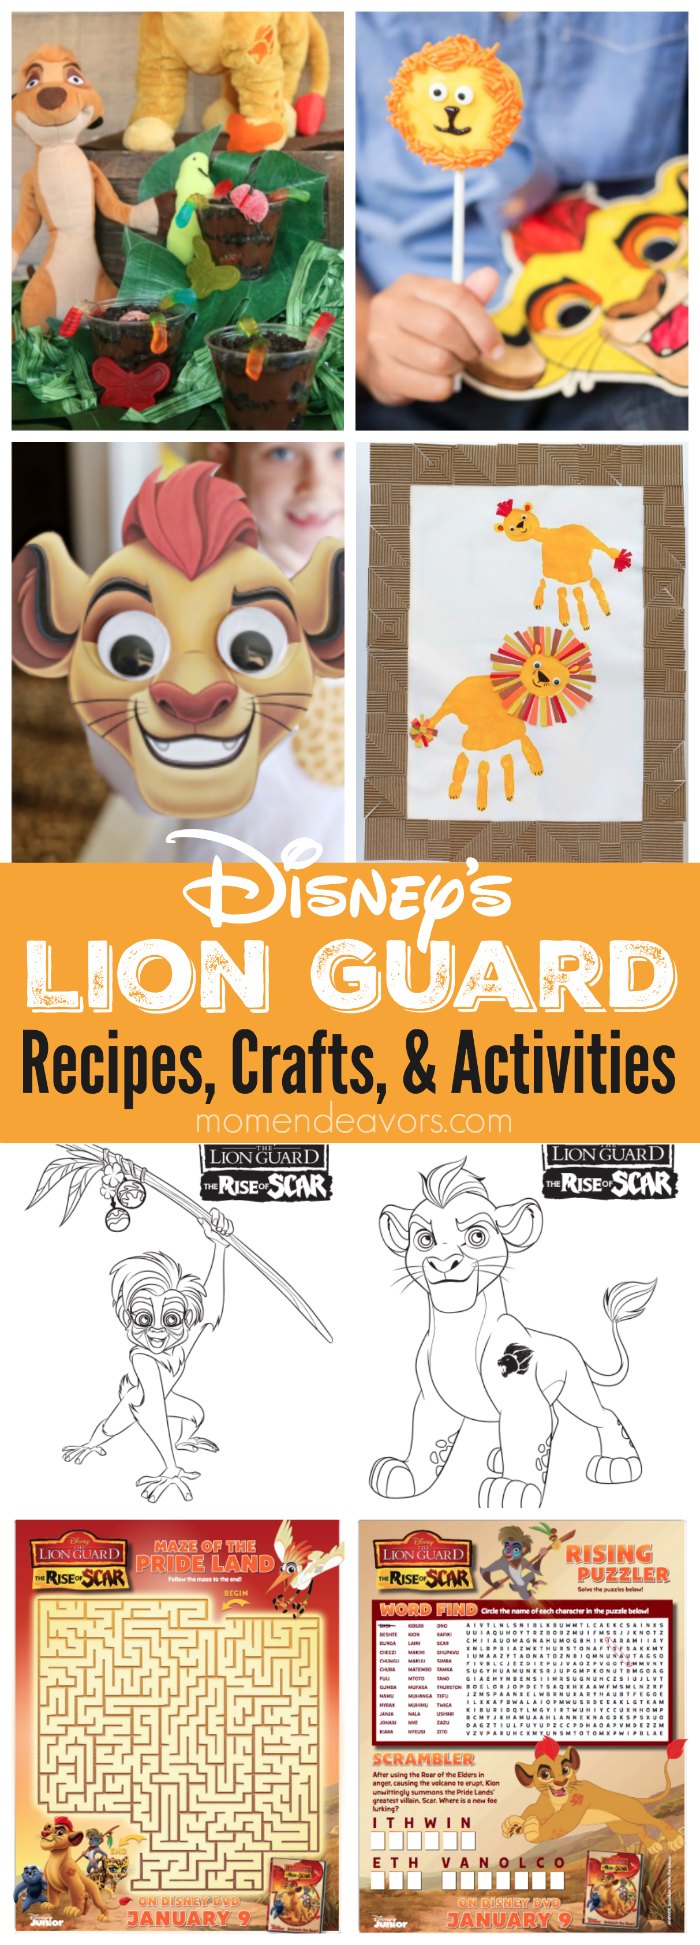 Lion Guard Recipes & Crafts